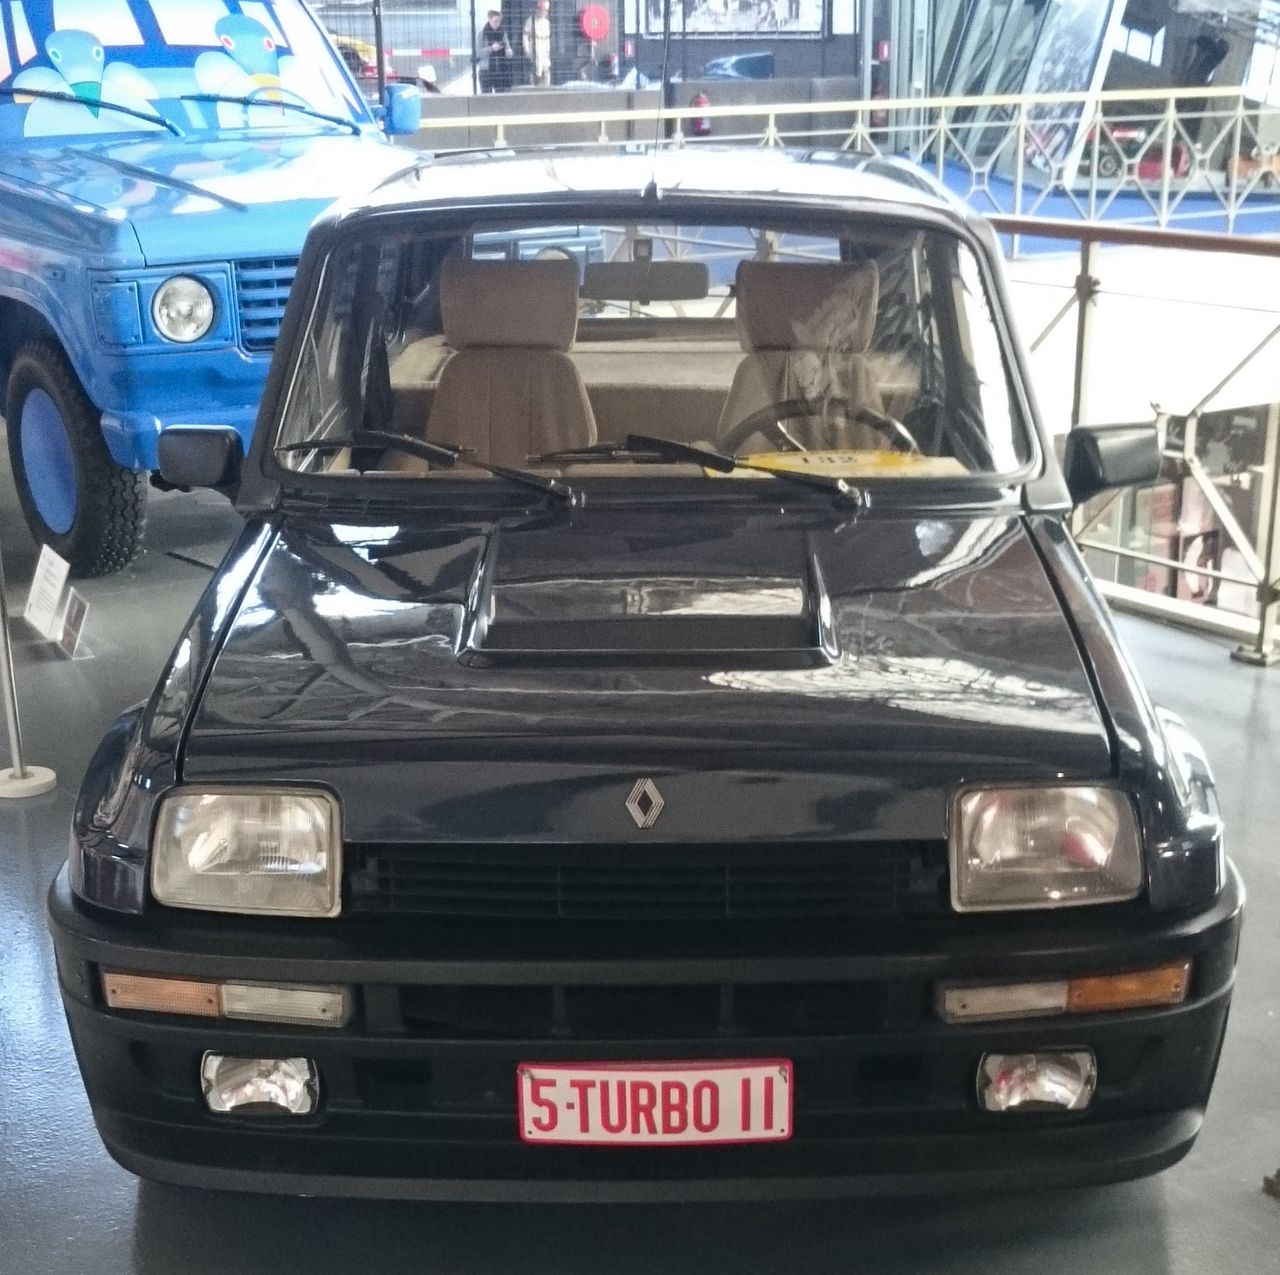 Renault 5 Turbo (1980-1983), 4-cyl silnik o pojemności 1.4l produkujący 160KM na tylne koła. Wyprodukowano 400 sztuk